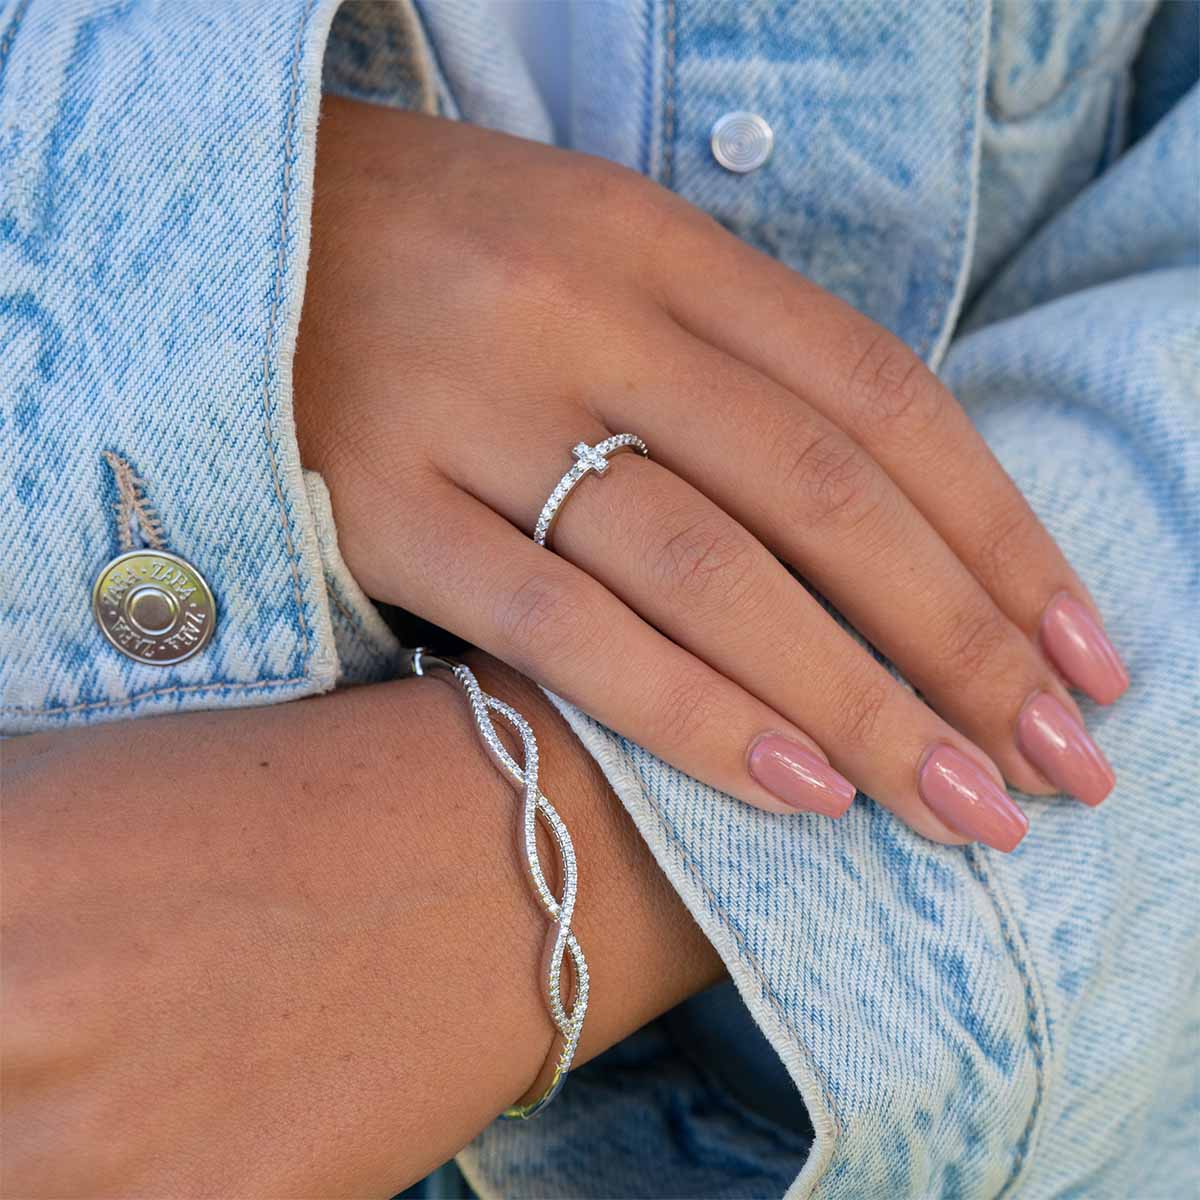 Cute silver twisted bracelet on wrist